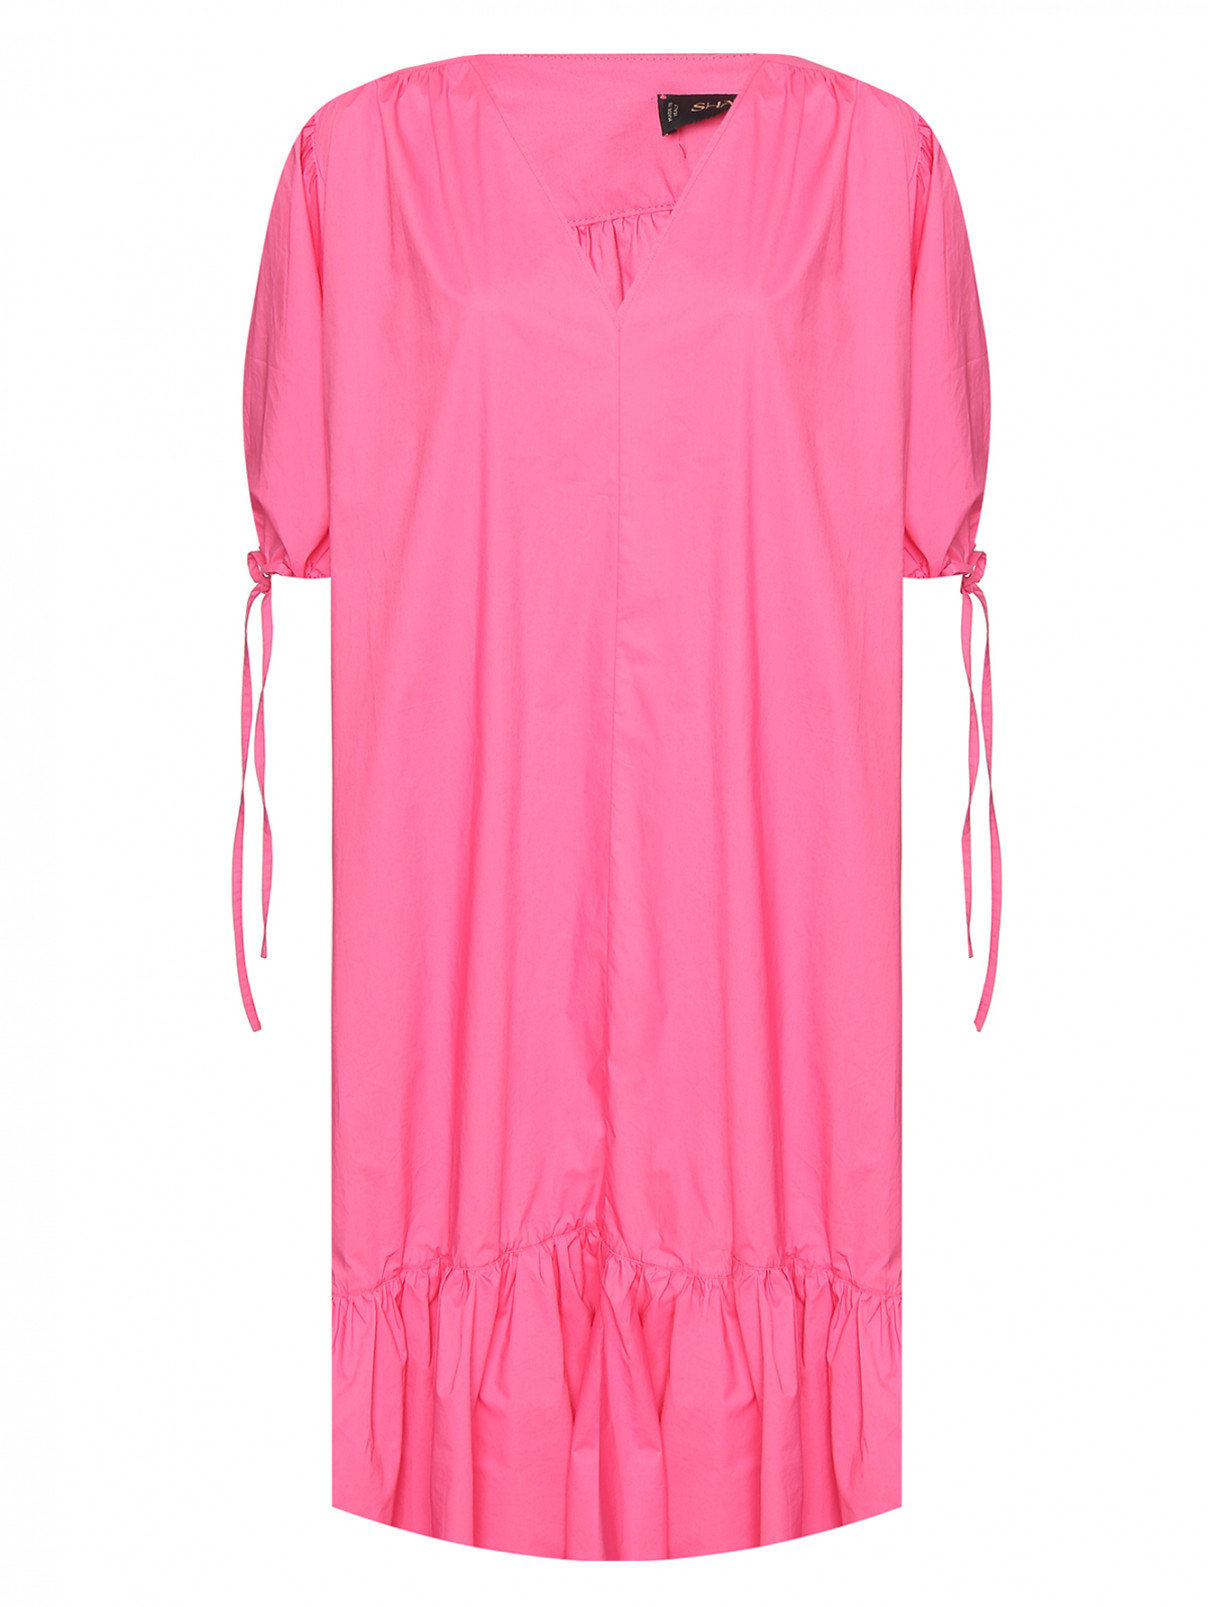 Платье из хлопка свободного кроя с карманами Shade  –  Общий вид  – Цвет:  Розовый